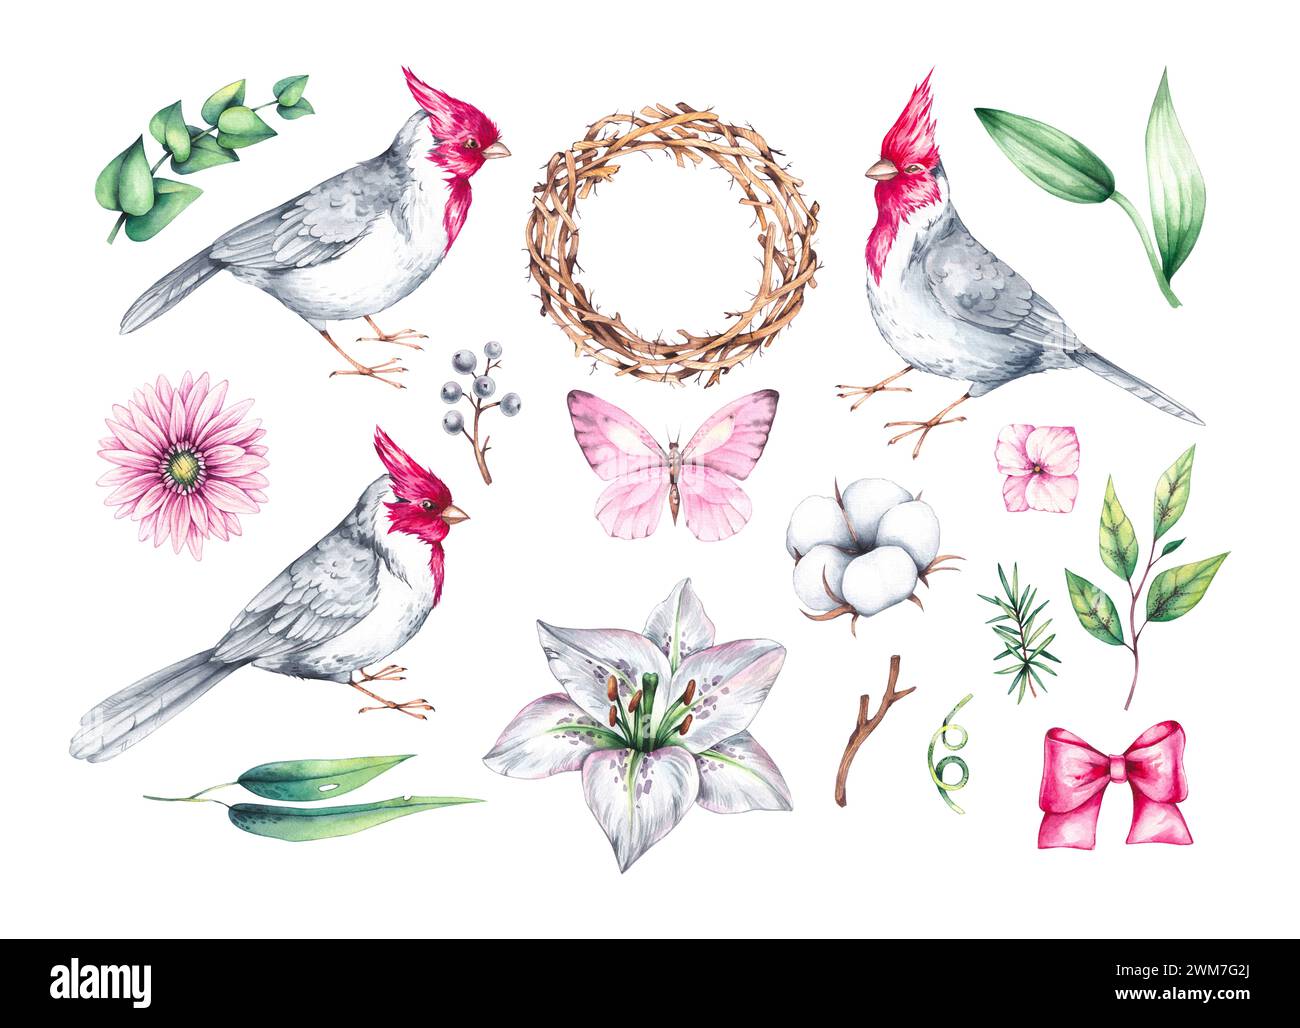 Ensemble d'aquarelle d'oiseaux avec des fleurs. Oiseau cardinal rouge, bouquets et couronnes sur blanc. Oiseaux et fleurs dessinés à la main isolés. Compositions avec des oiseaux Banque D'Images